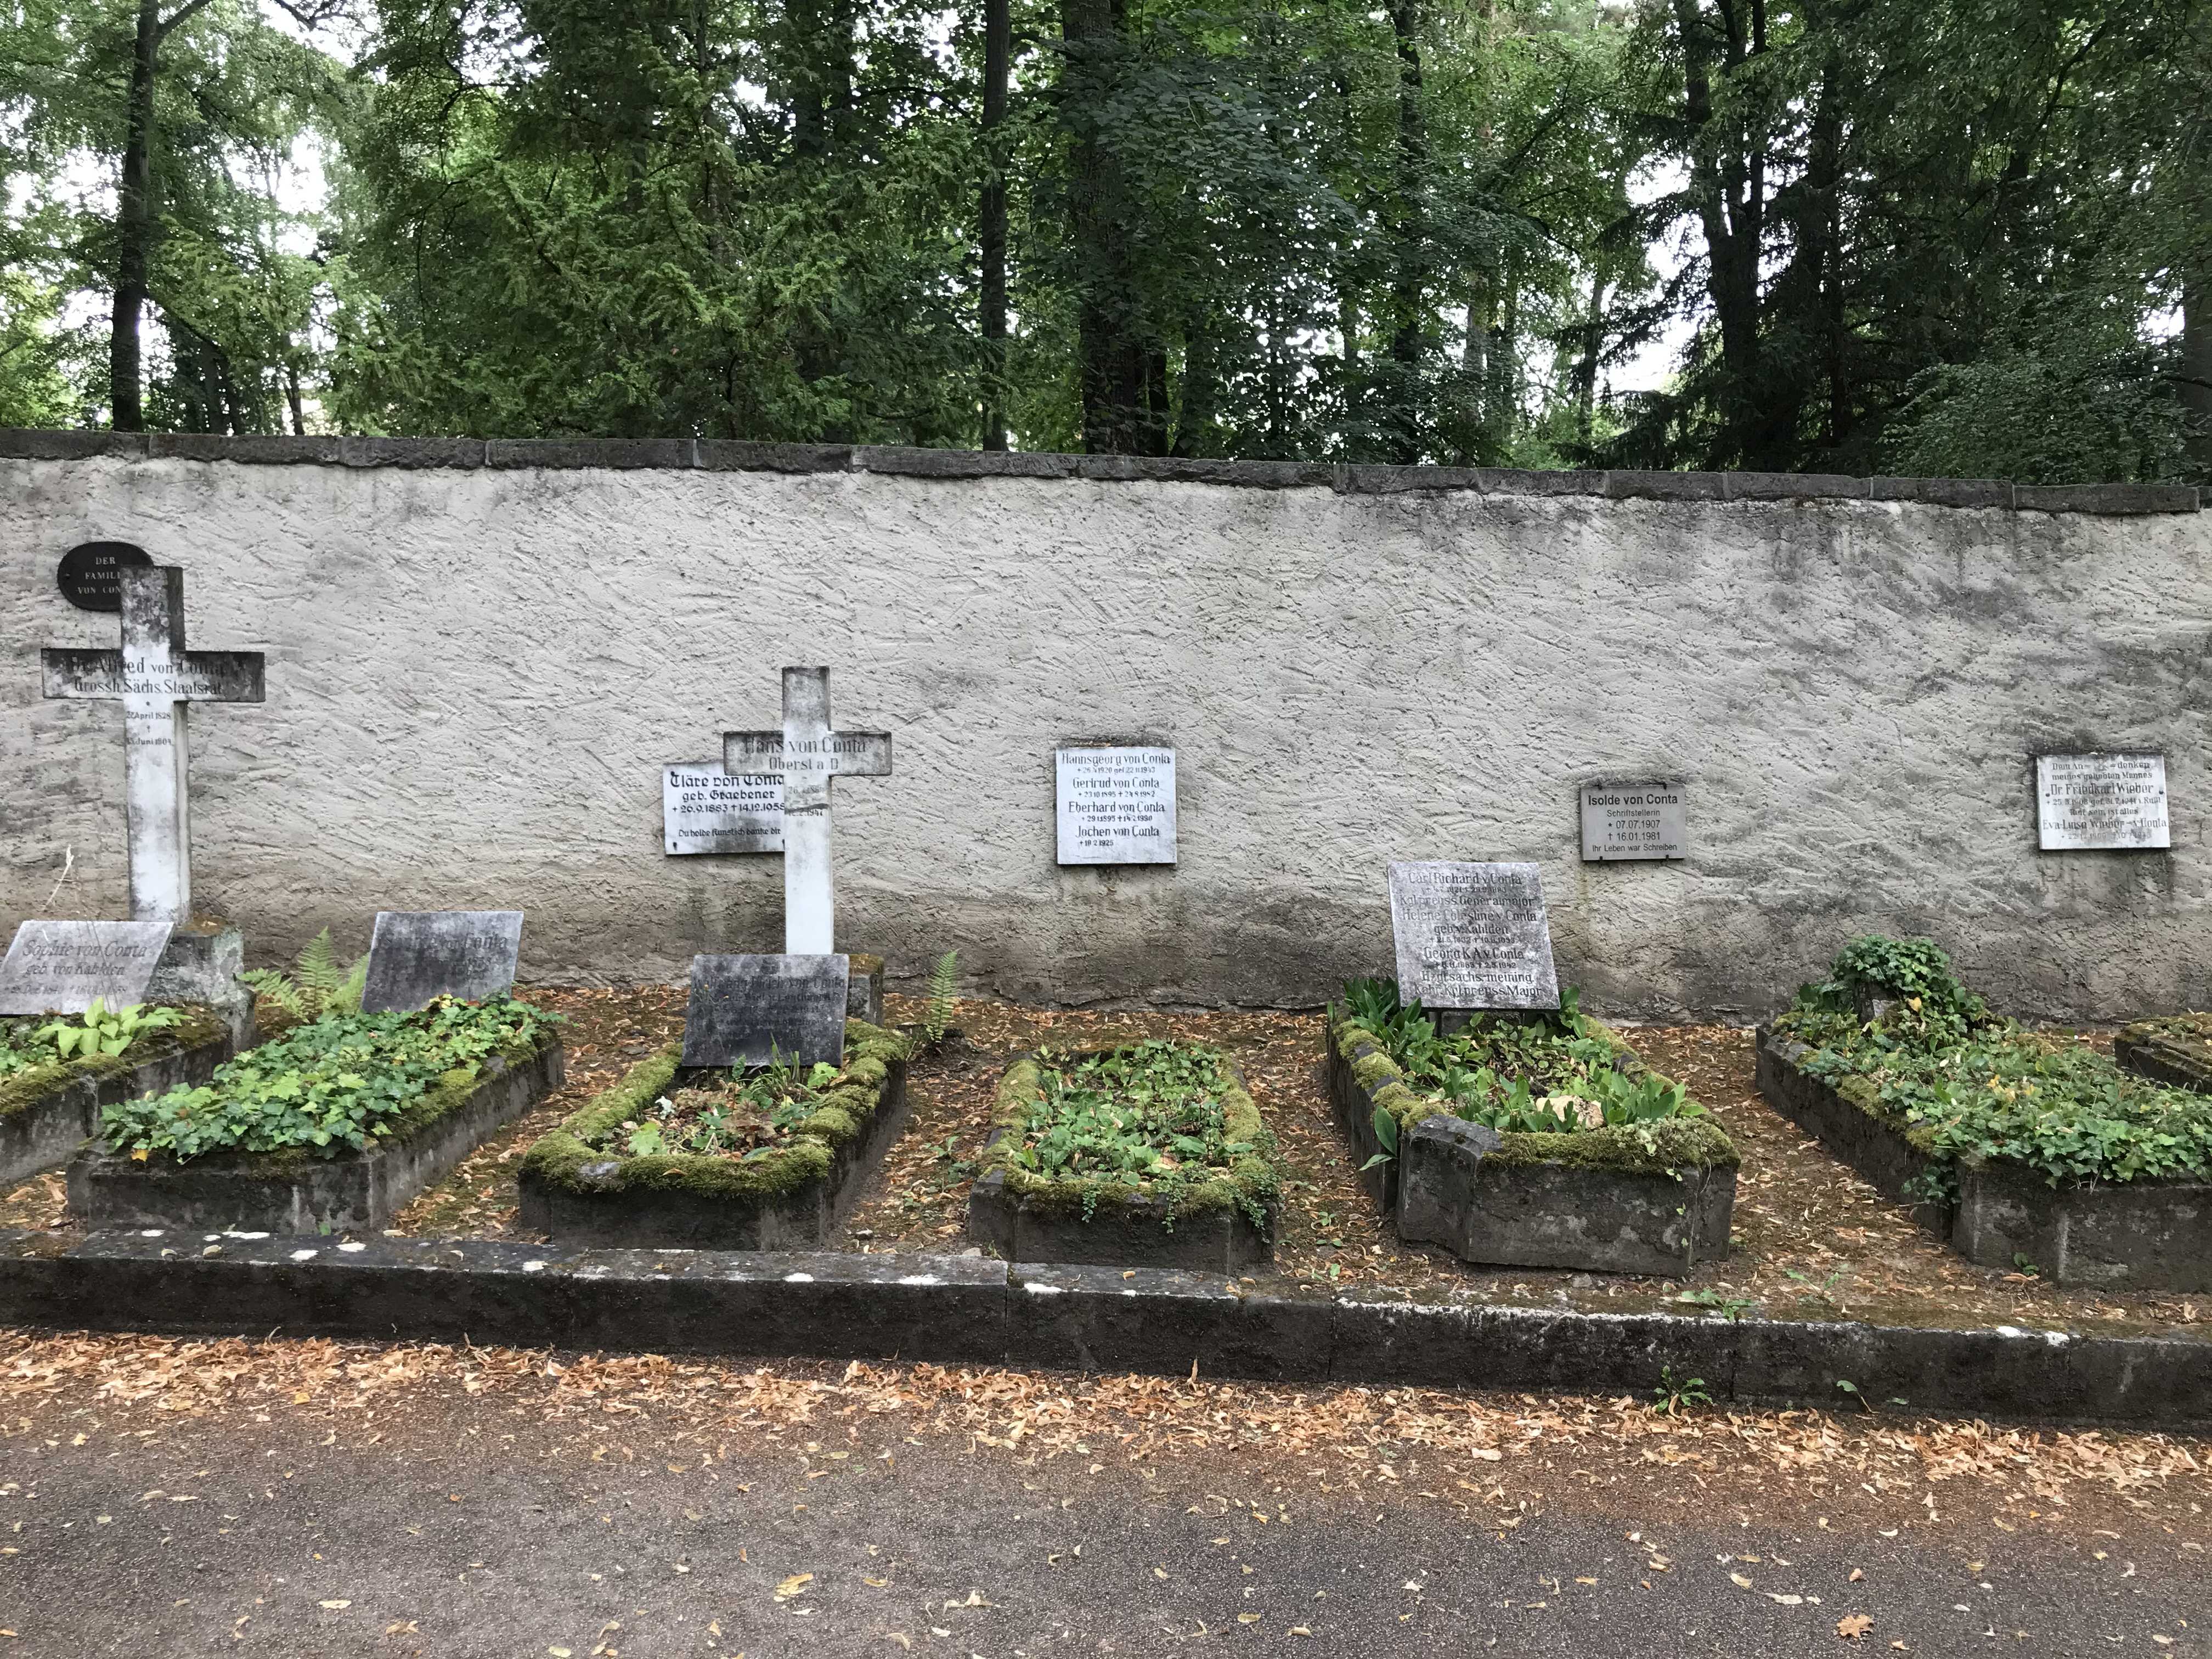 Grabstein Hannsgeorg von Conta, Hauptfriedhof Weimar, Thüringen, Deutschland